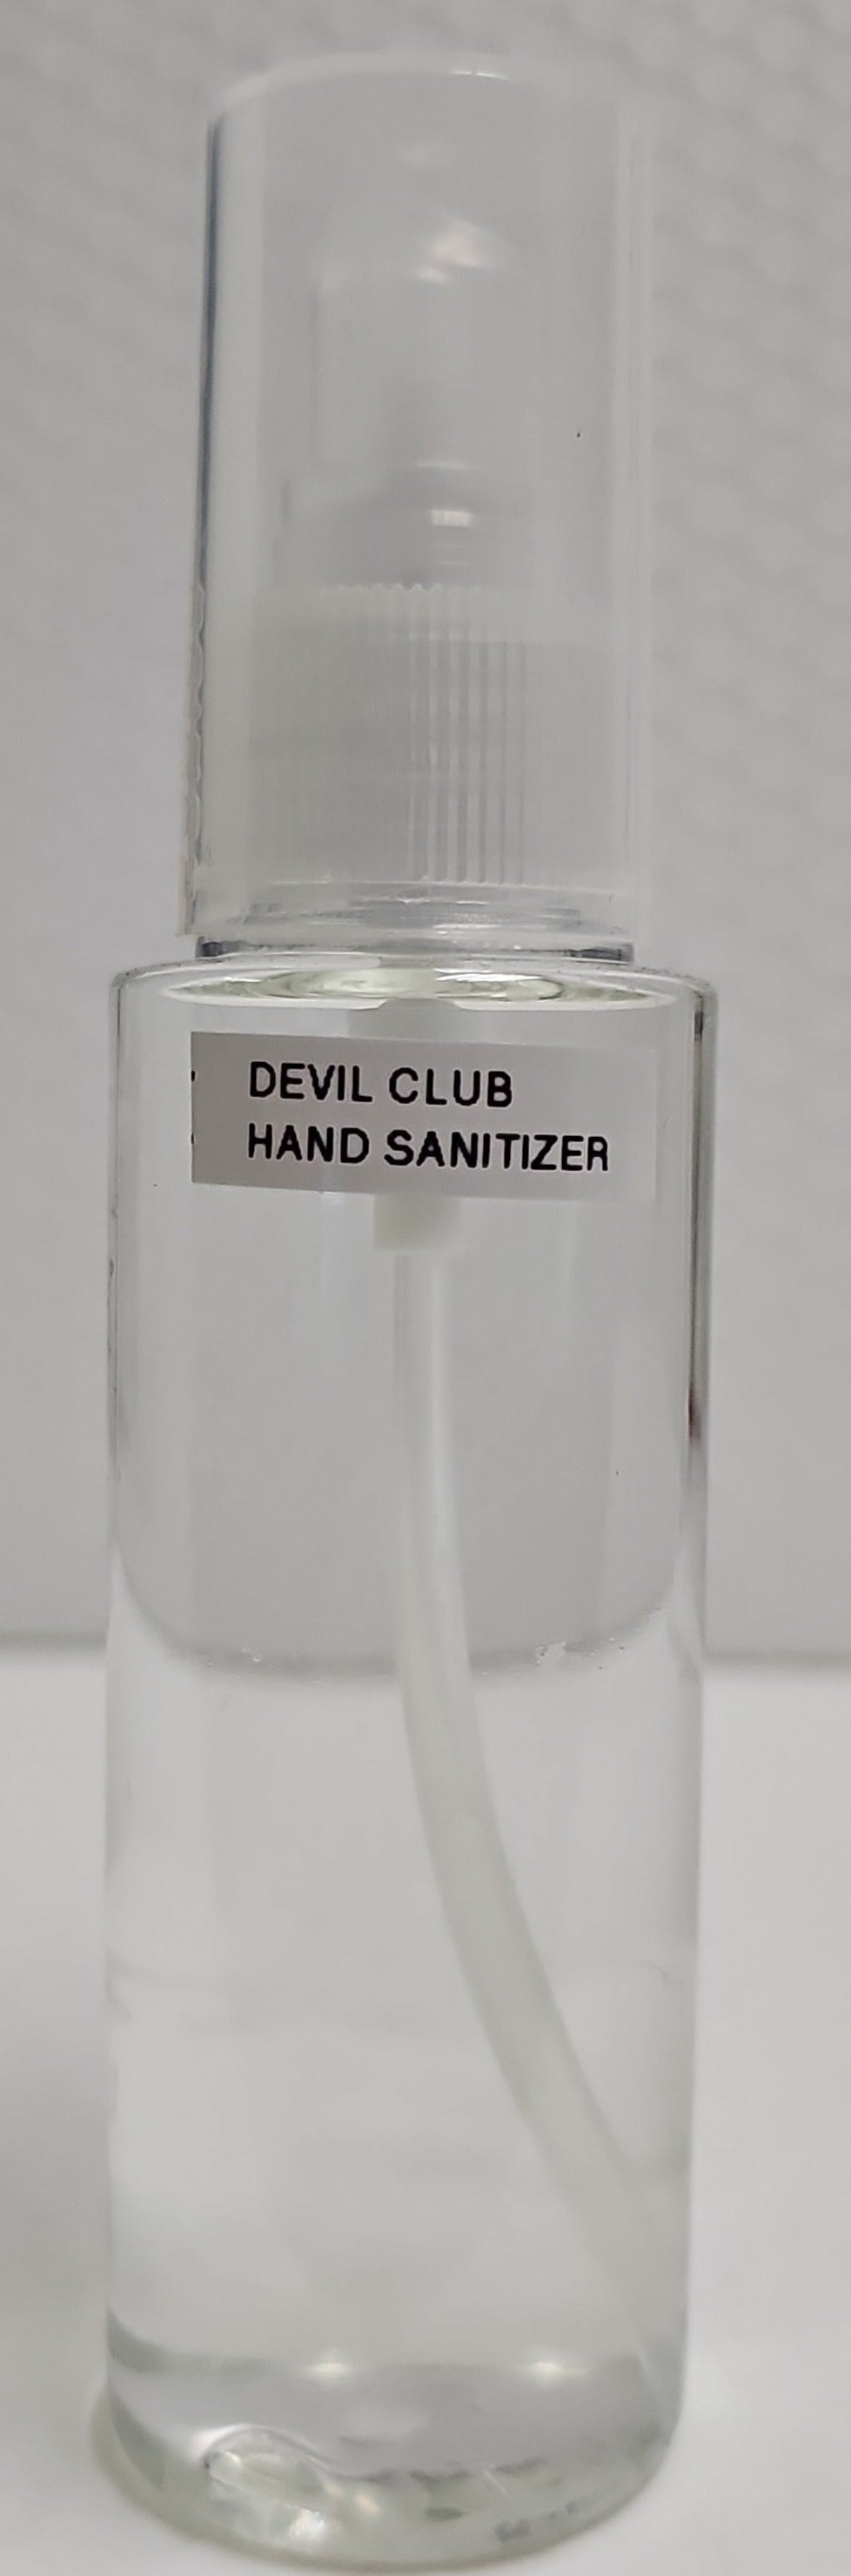 Devils Club Hand Sanitizer